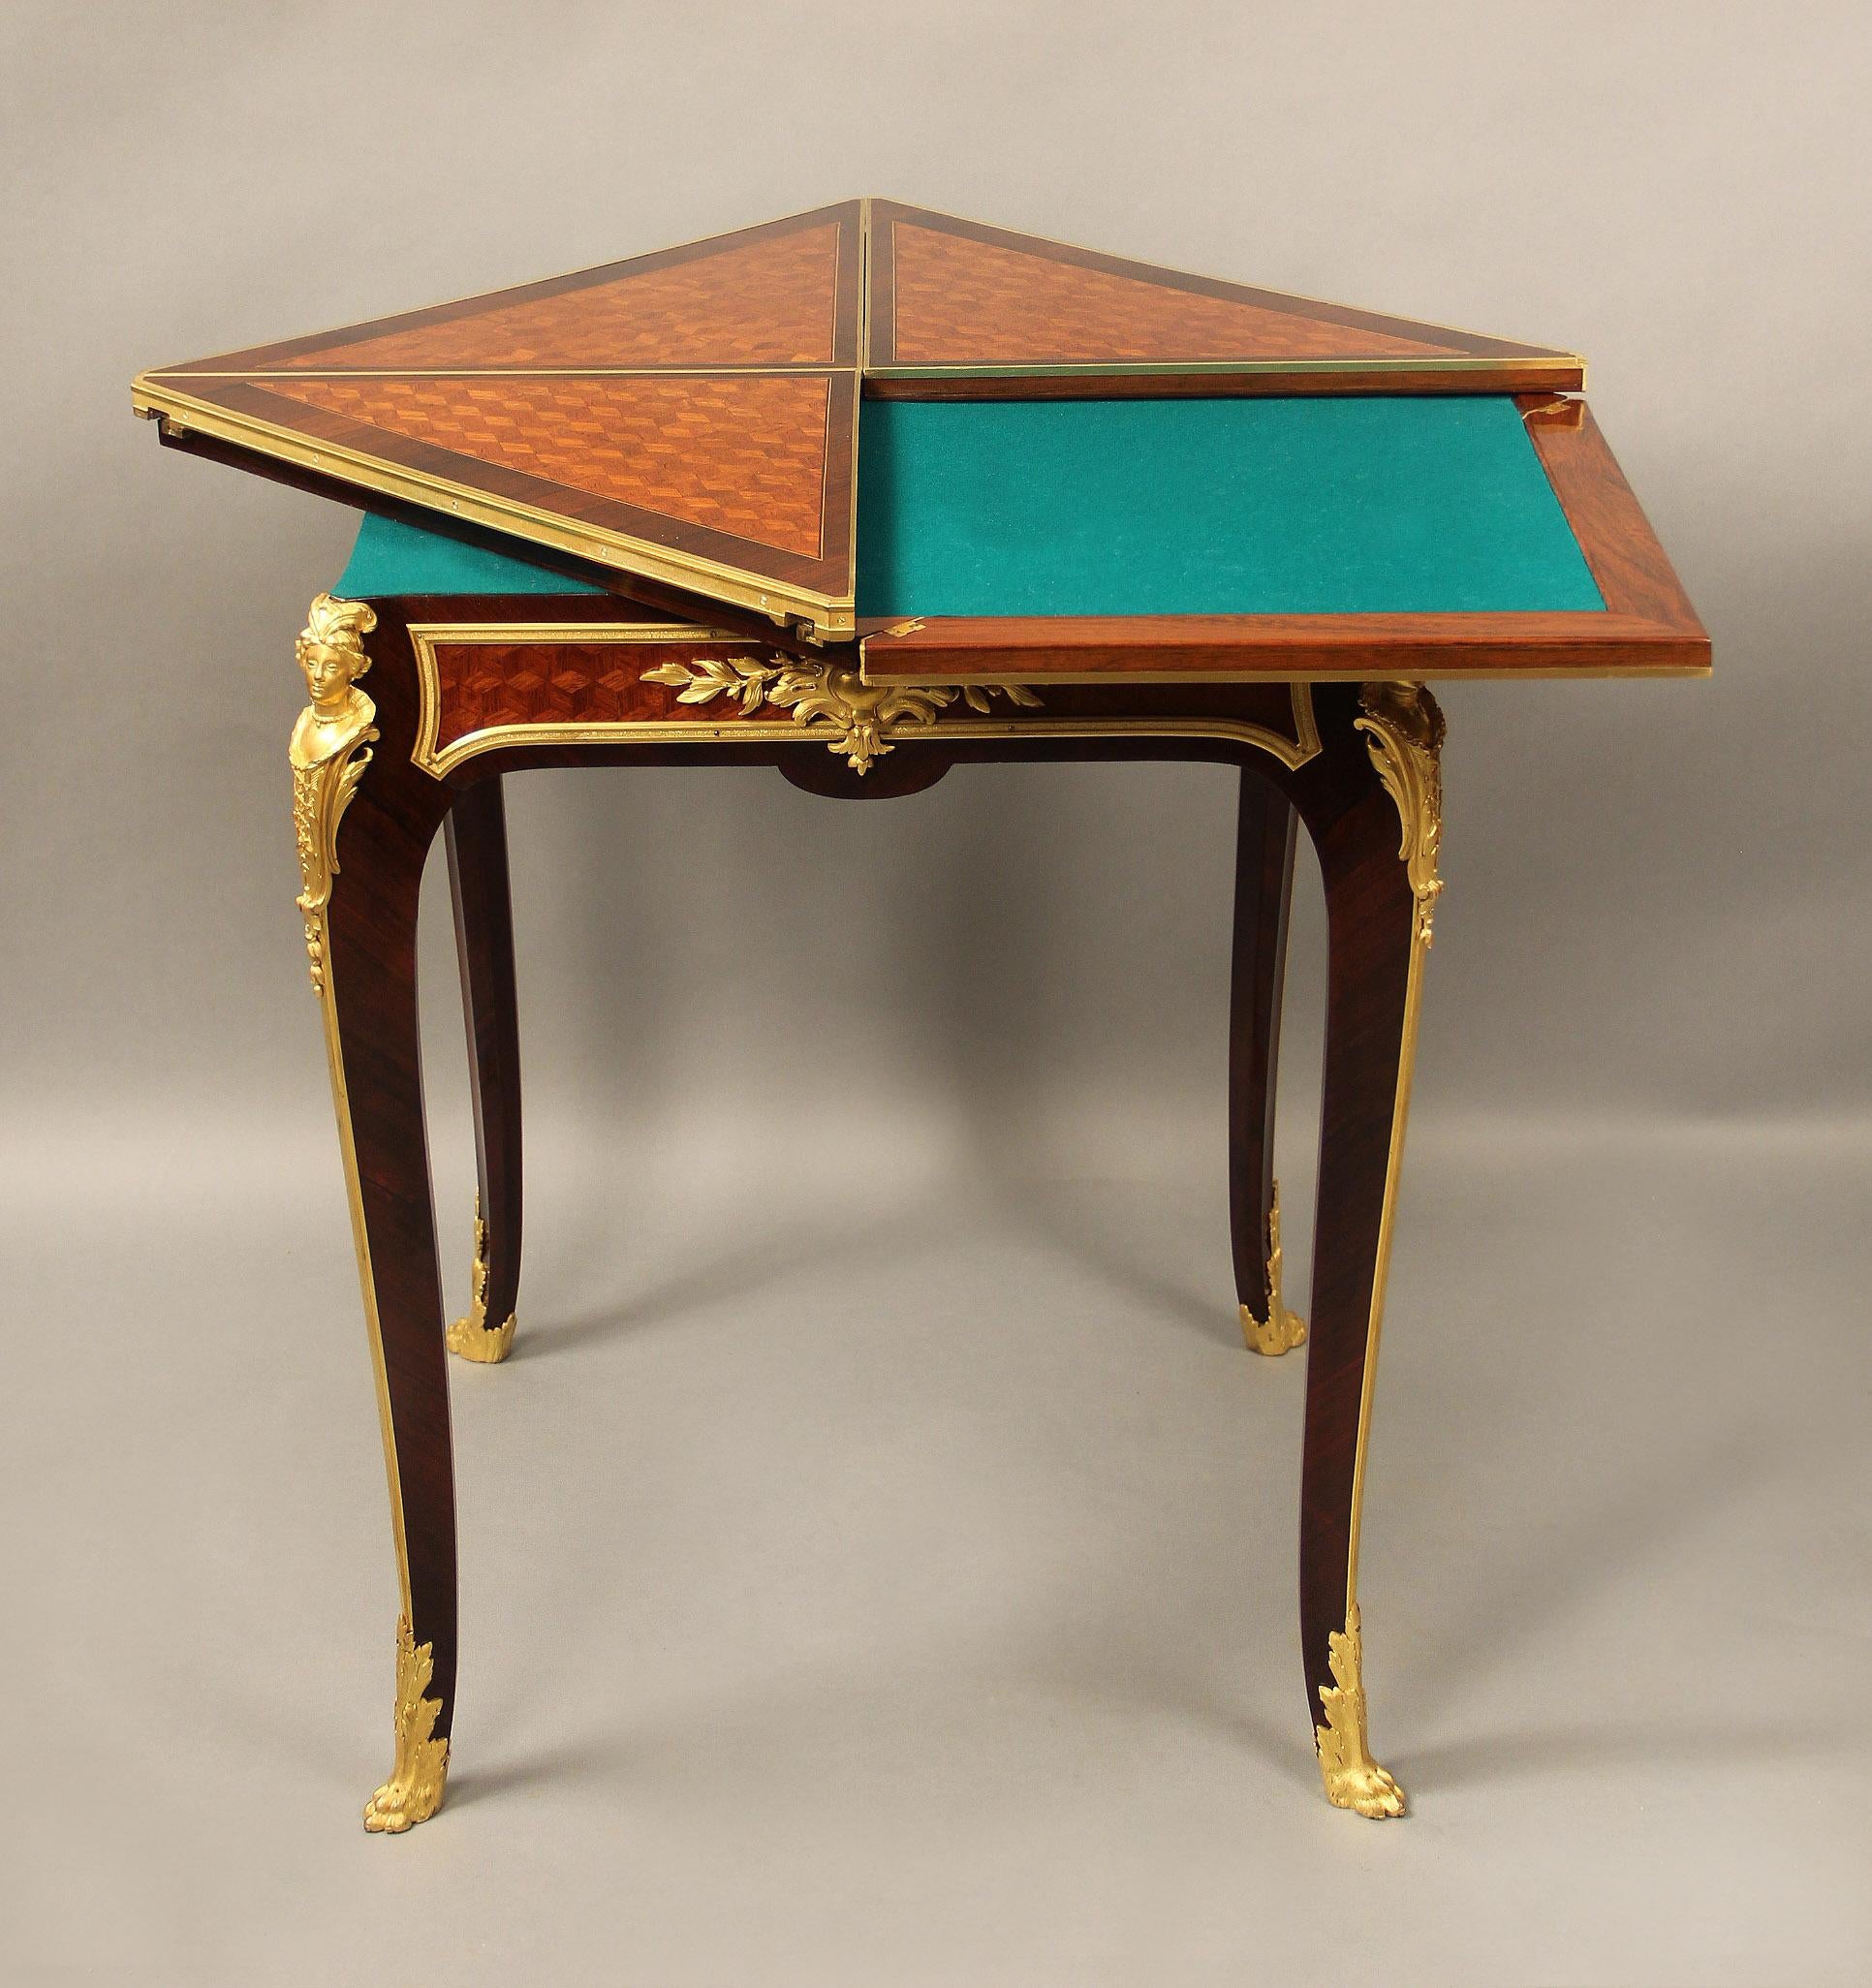 Ein wundervoller, in vergoldeter Bronze gefasster Spieltisch mit Parkettumschlag aus dem späten 19. Jahrhundert von François Linke

François Linke - Index Nr. 523

Die drehbare Platte mit vier dreieckigen Blättern, die sich zu einer mit grünem